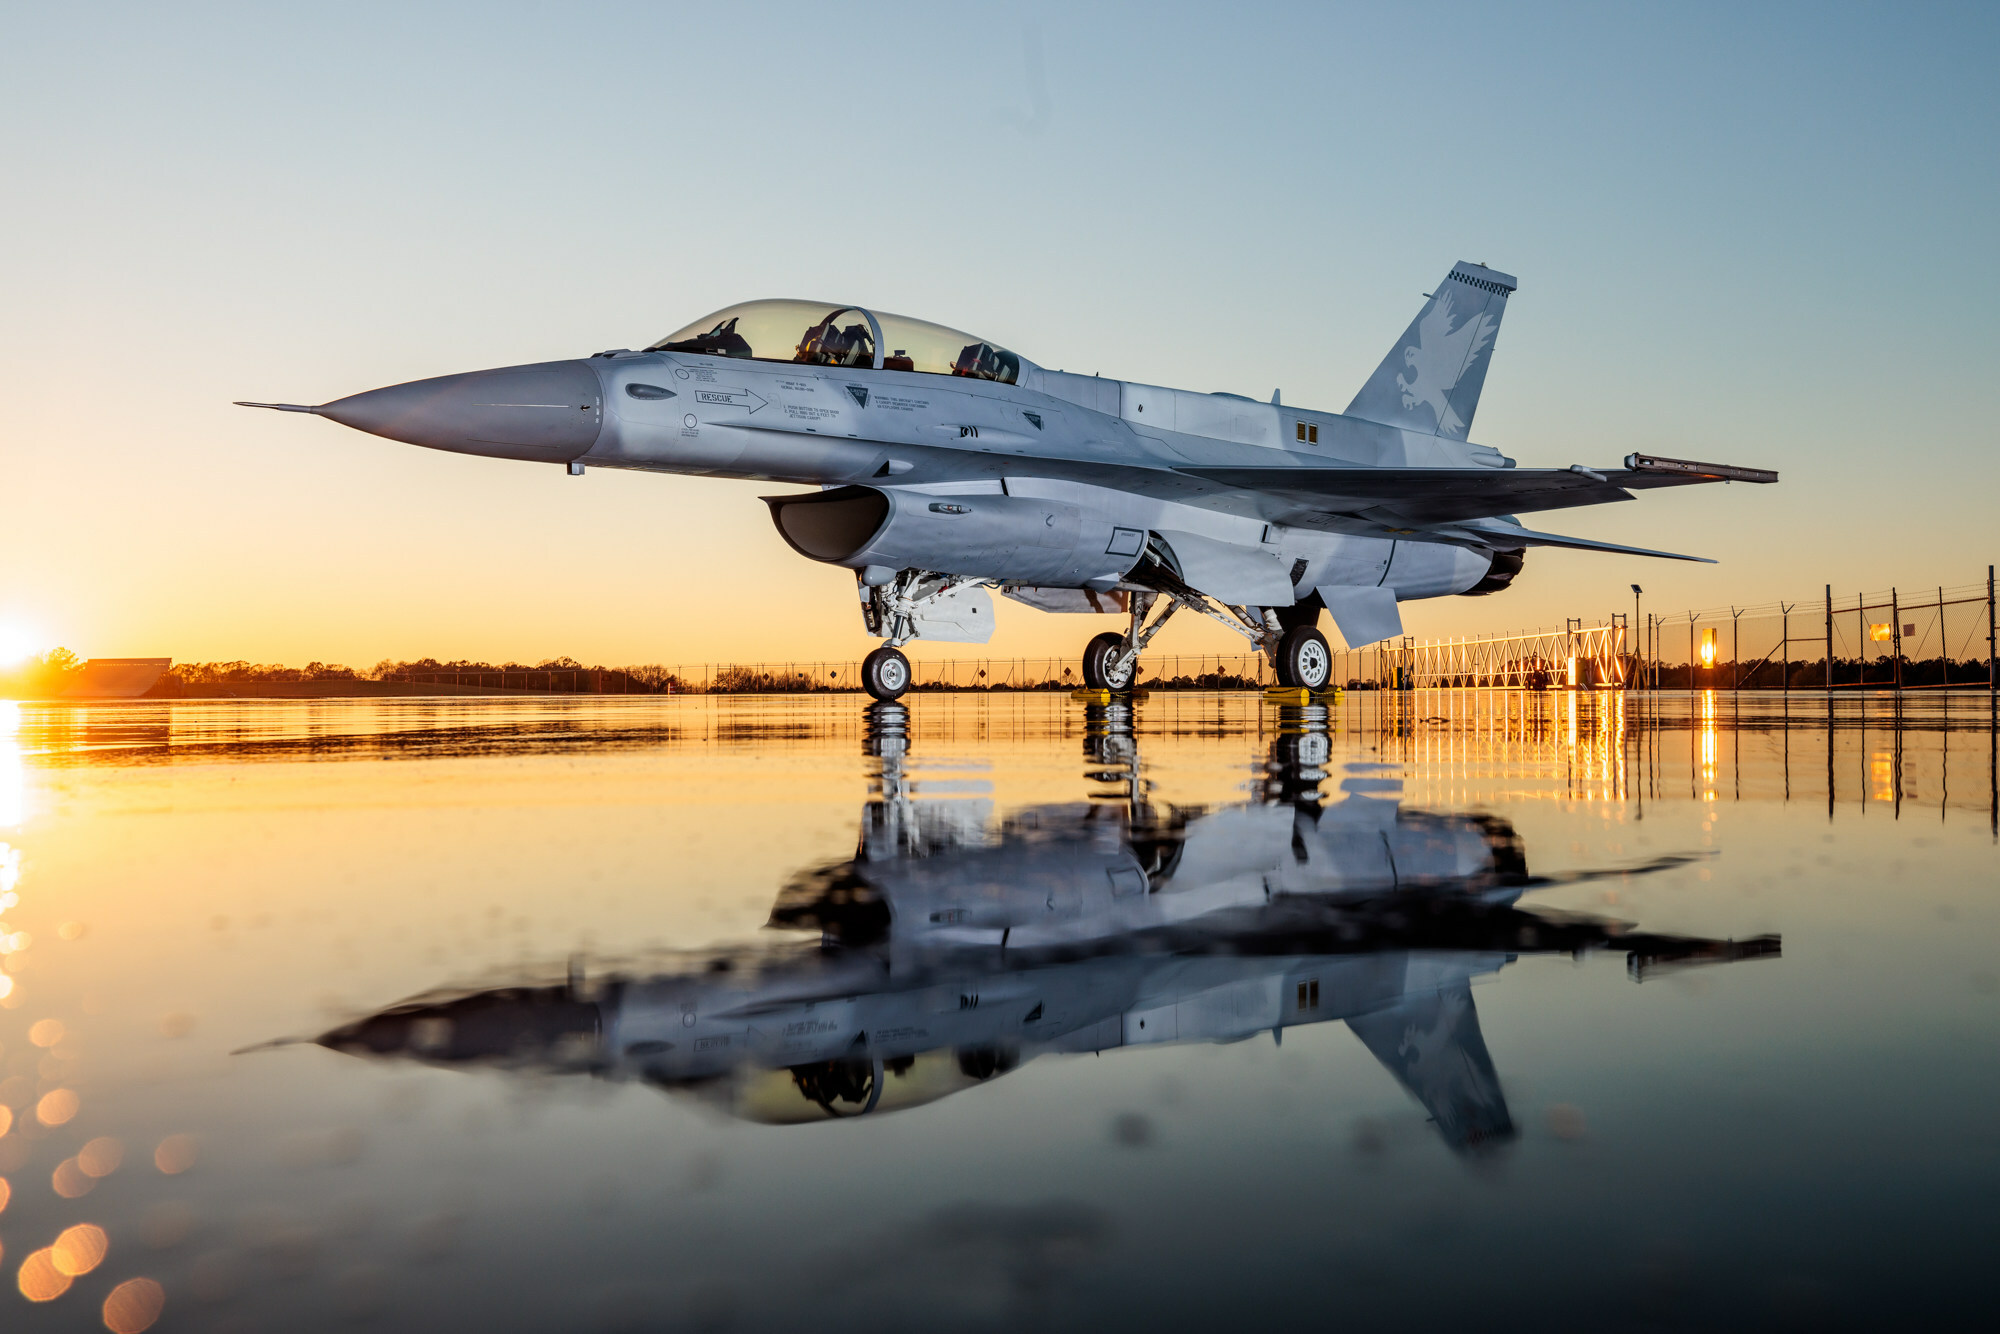 Northrop Grumman erhält 128 Millionen Dollar für die Produktion von 48 AESA-Radaren für F-16-Kampfflugzeuge